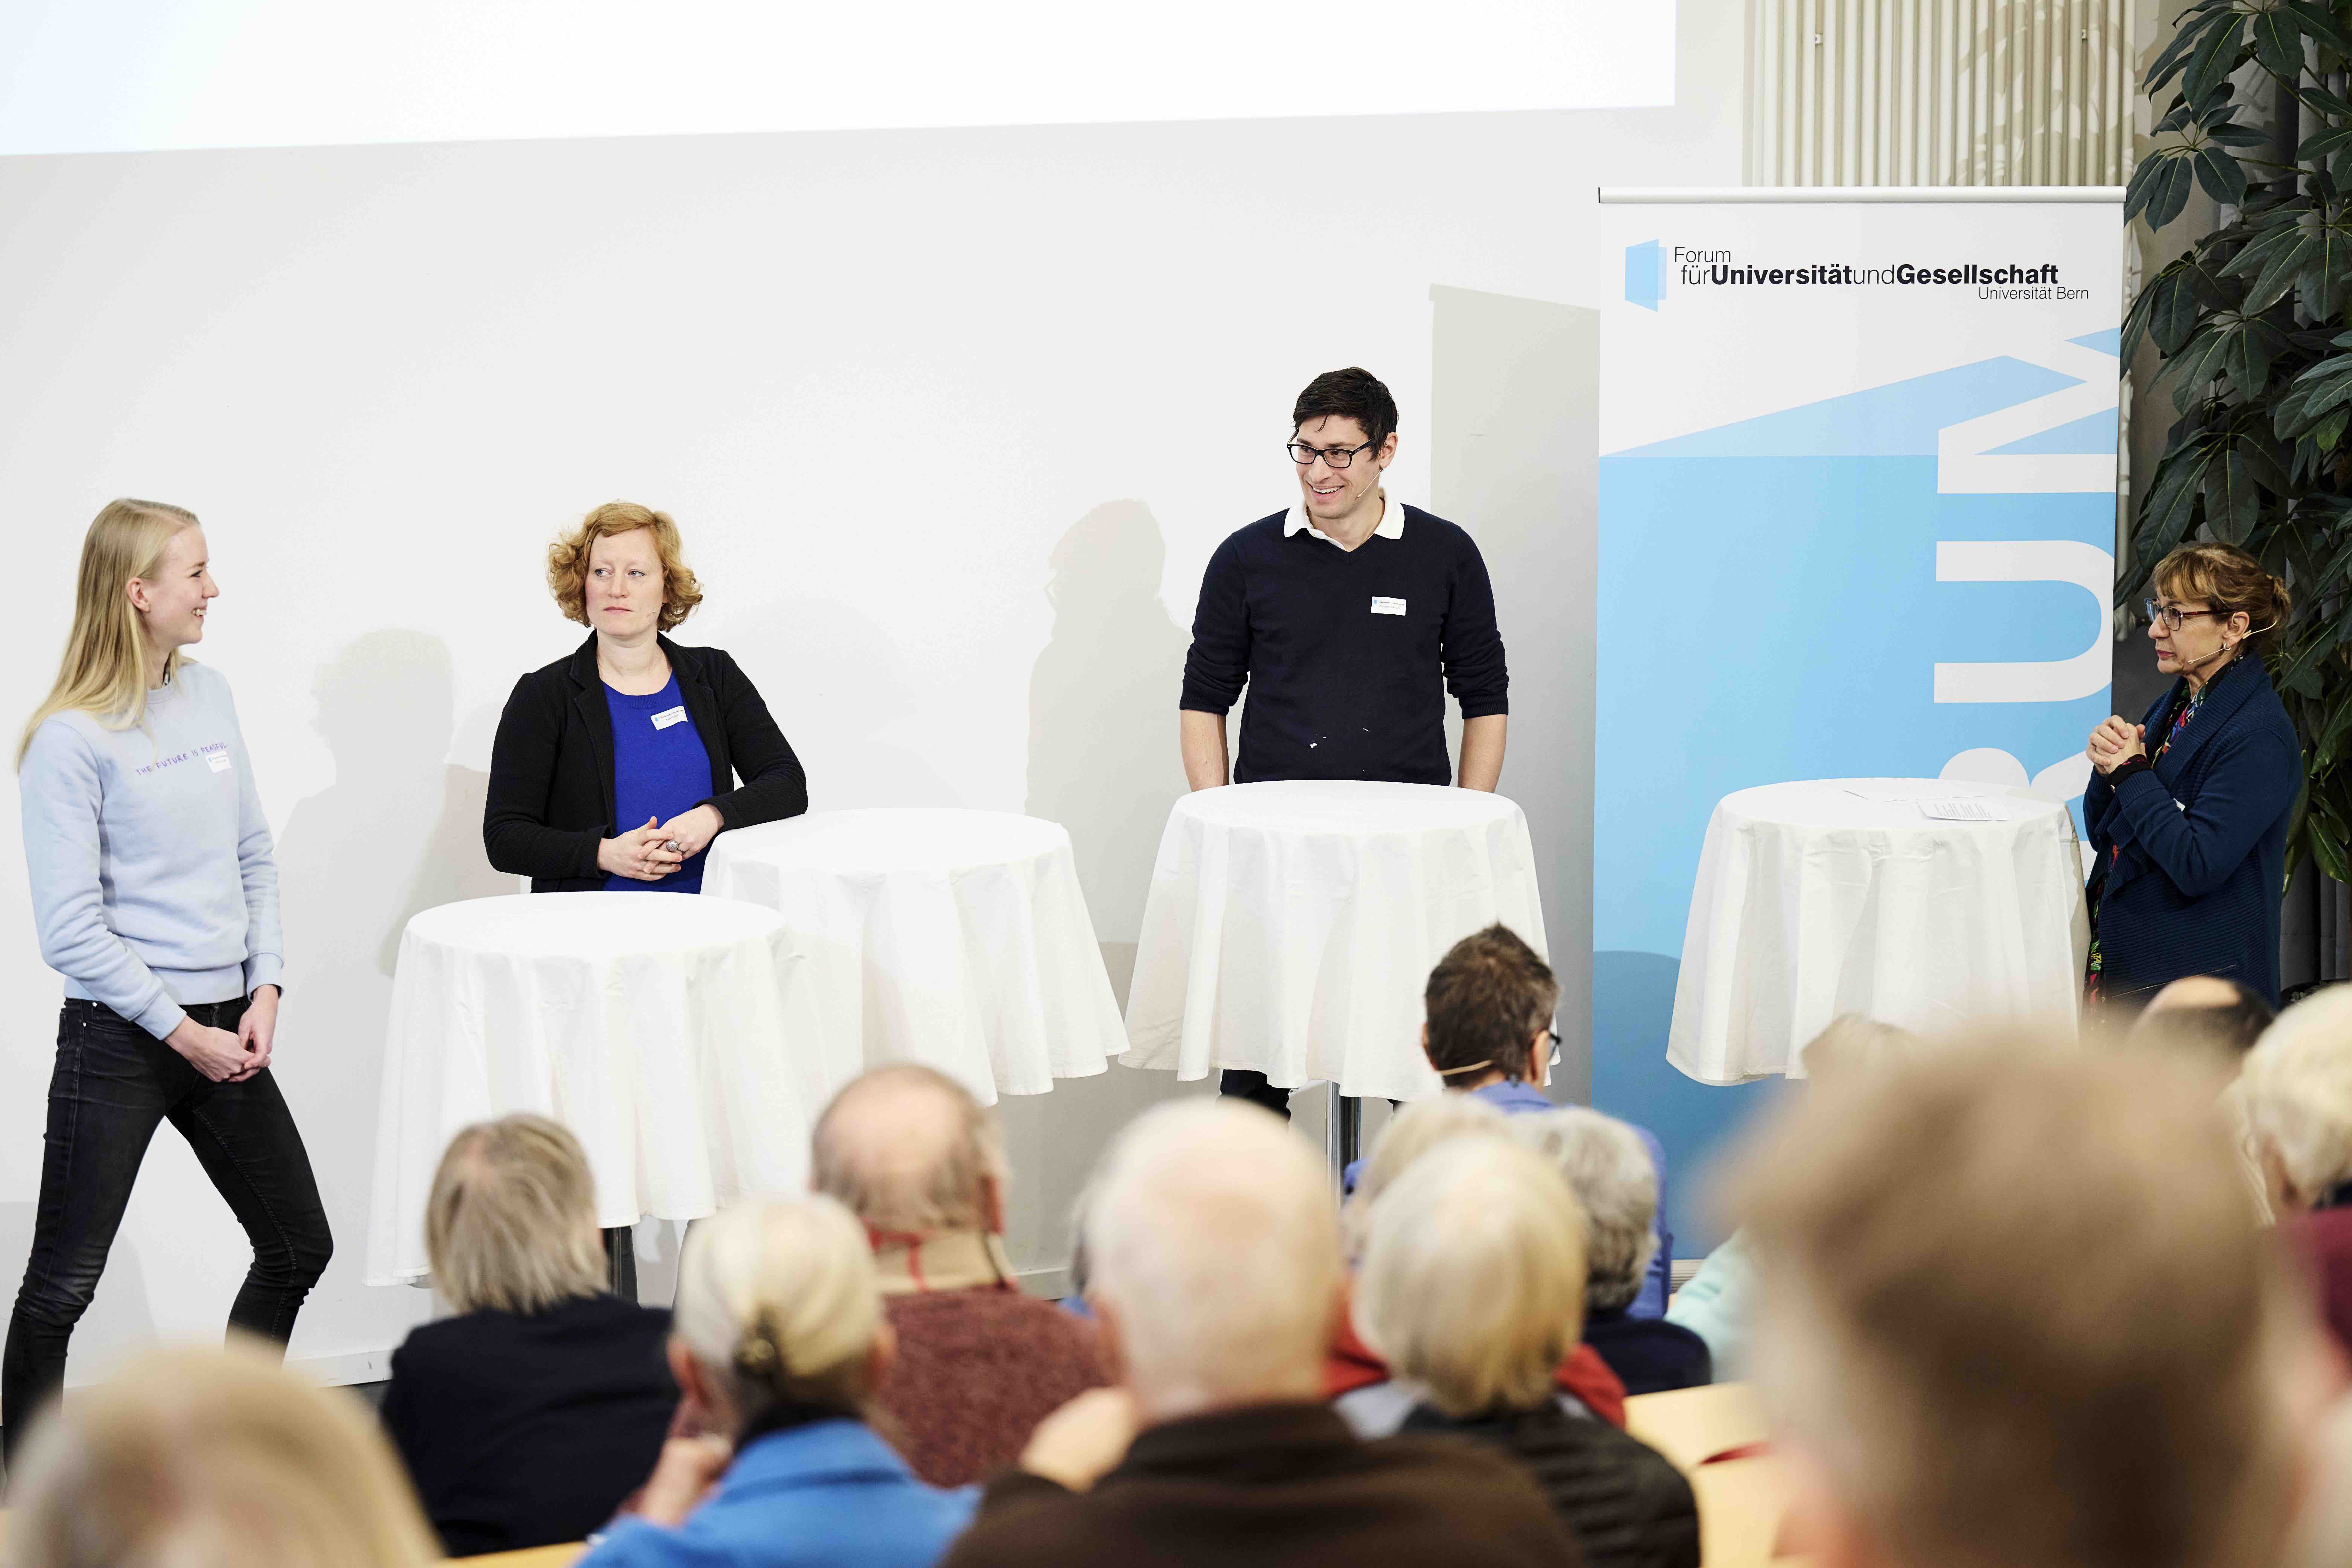 Zwei Frauen und ein Mann stehen während einer Podiumsdiskussion hinter Stehtischen mit weissen Tischtüchern. Im Hintergrund ist ein Banner mit dem blauweissen Forumslogo sichtbar.